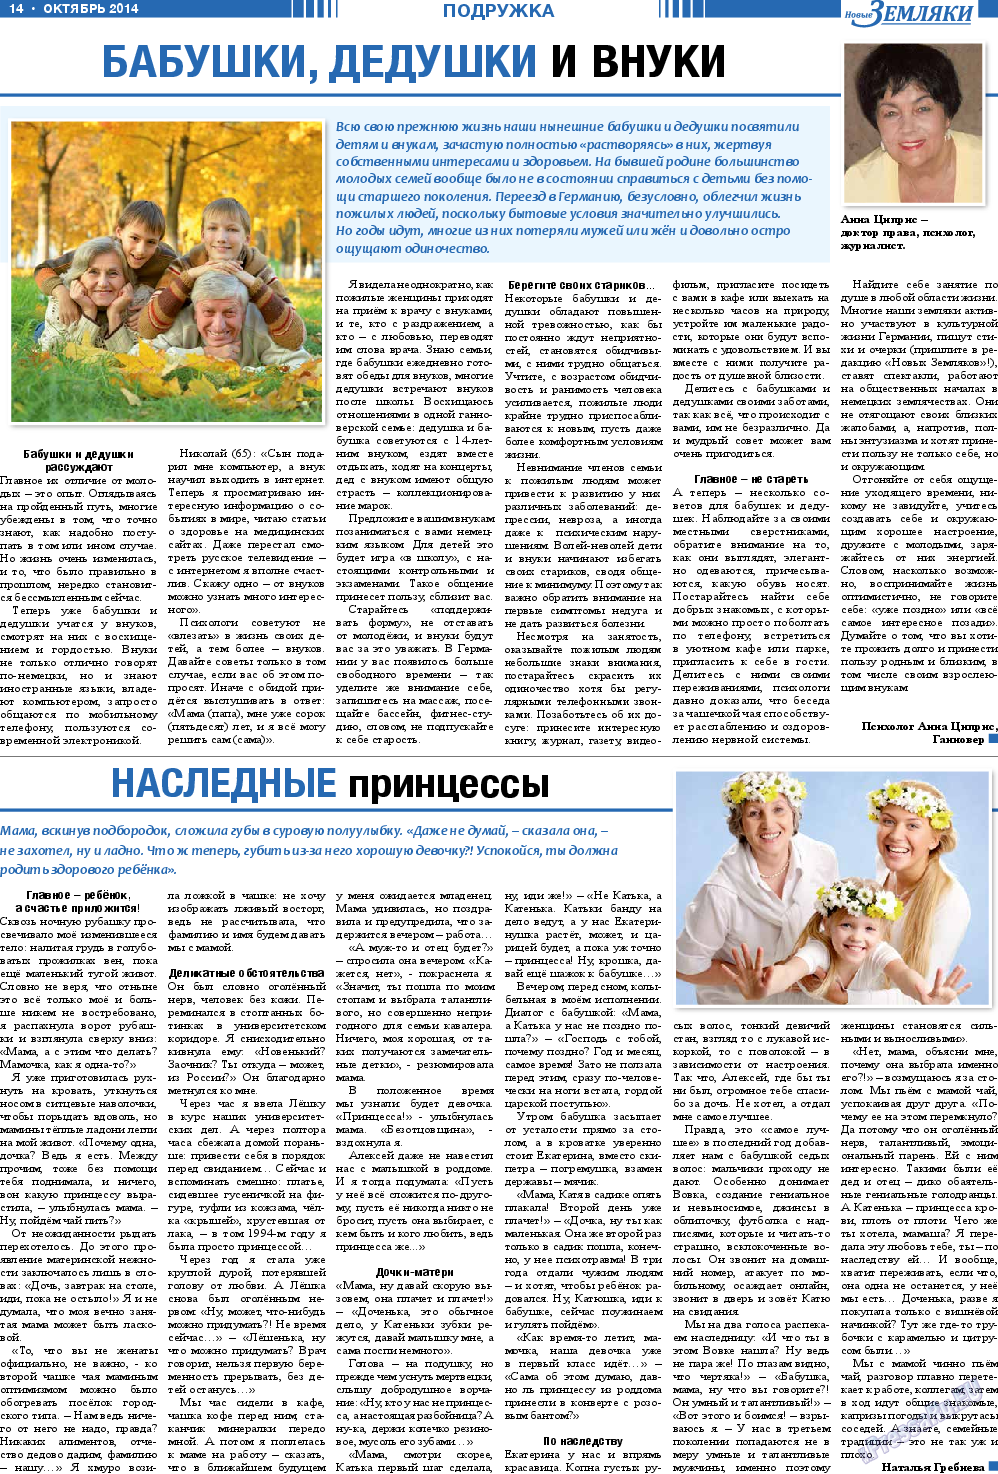 Новые Земляки, газета. 2014 №10 стр.14